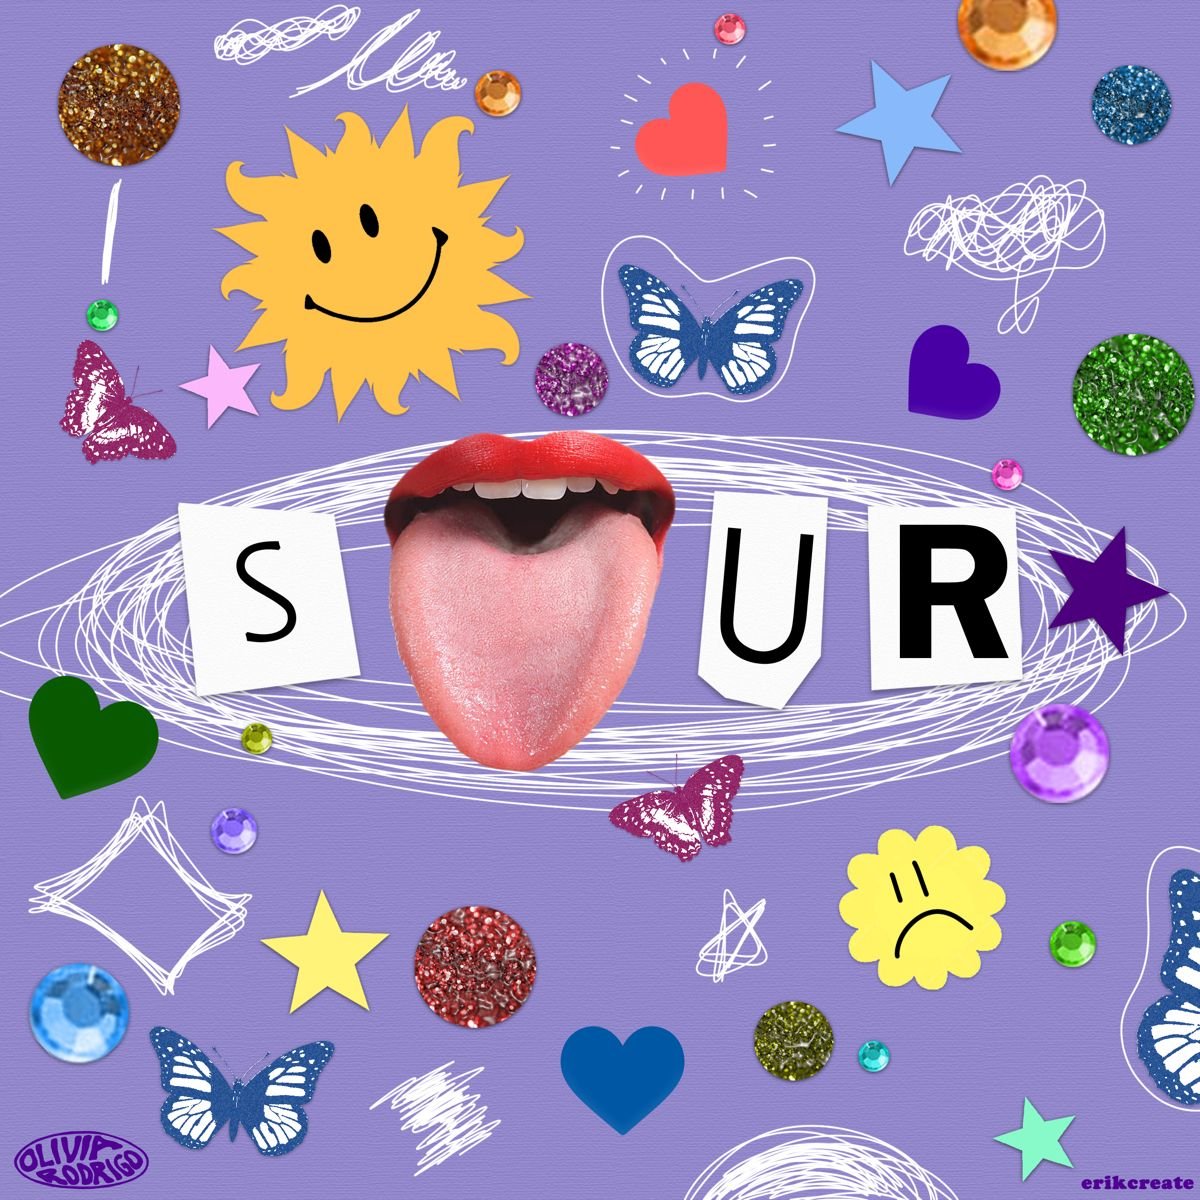 Sour Album Cover